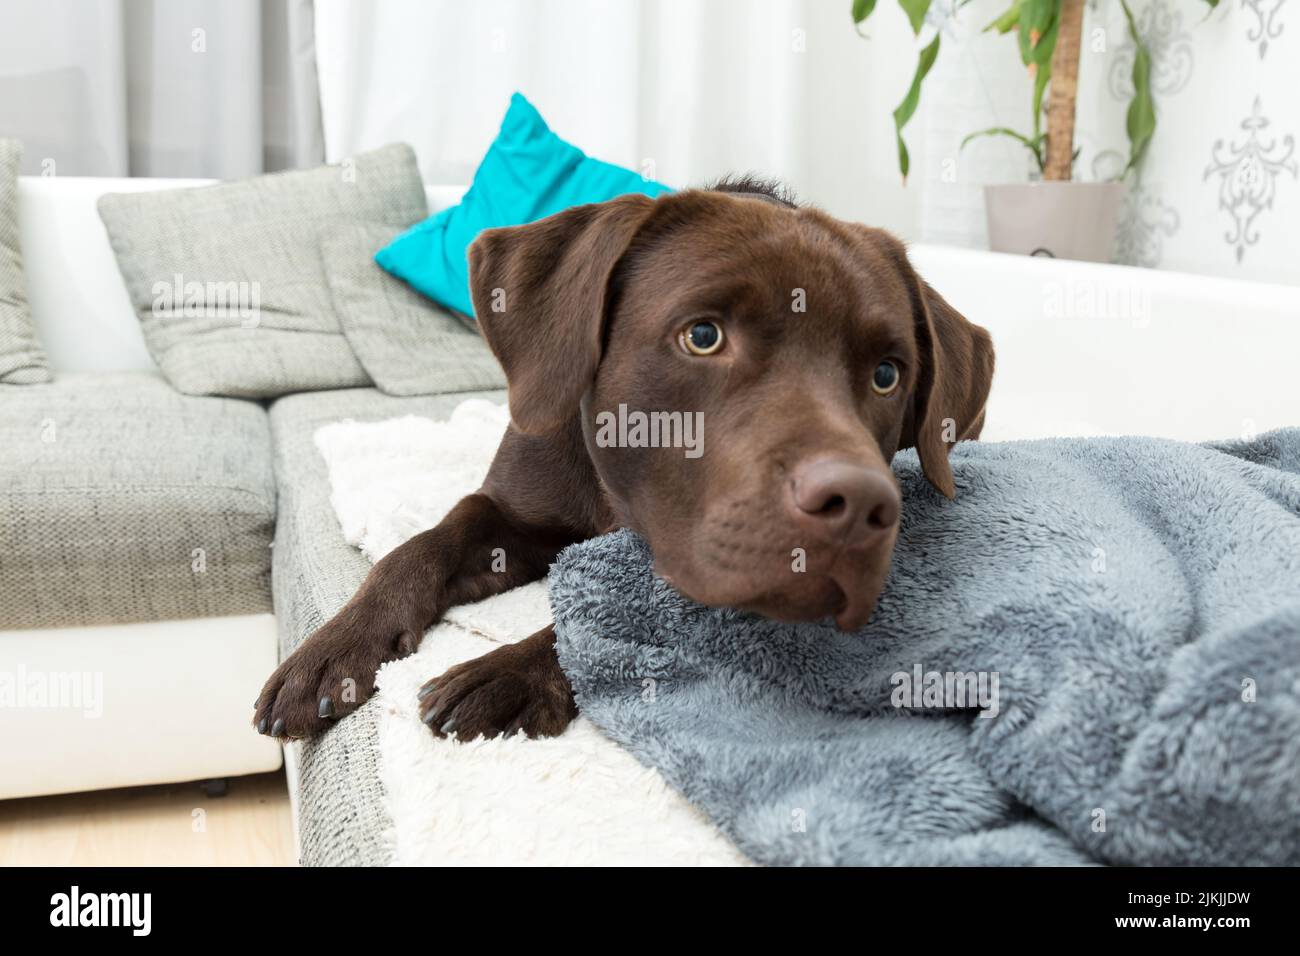 Un Labrador retriever brun couché sur la couverture souple à la maison Banque D'Images